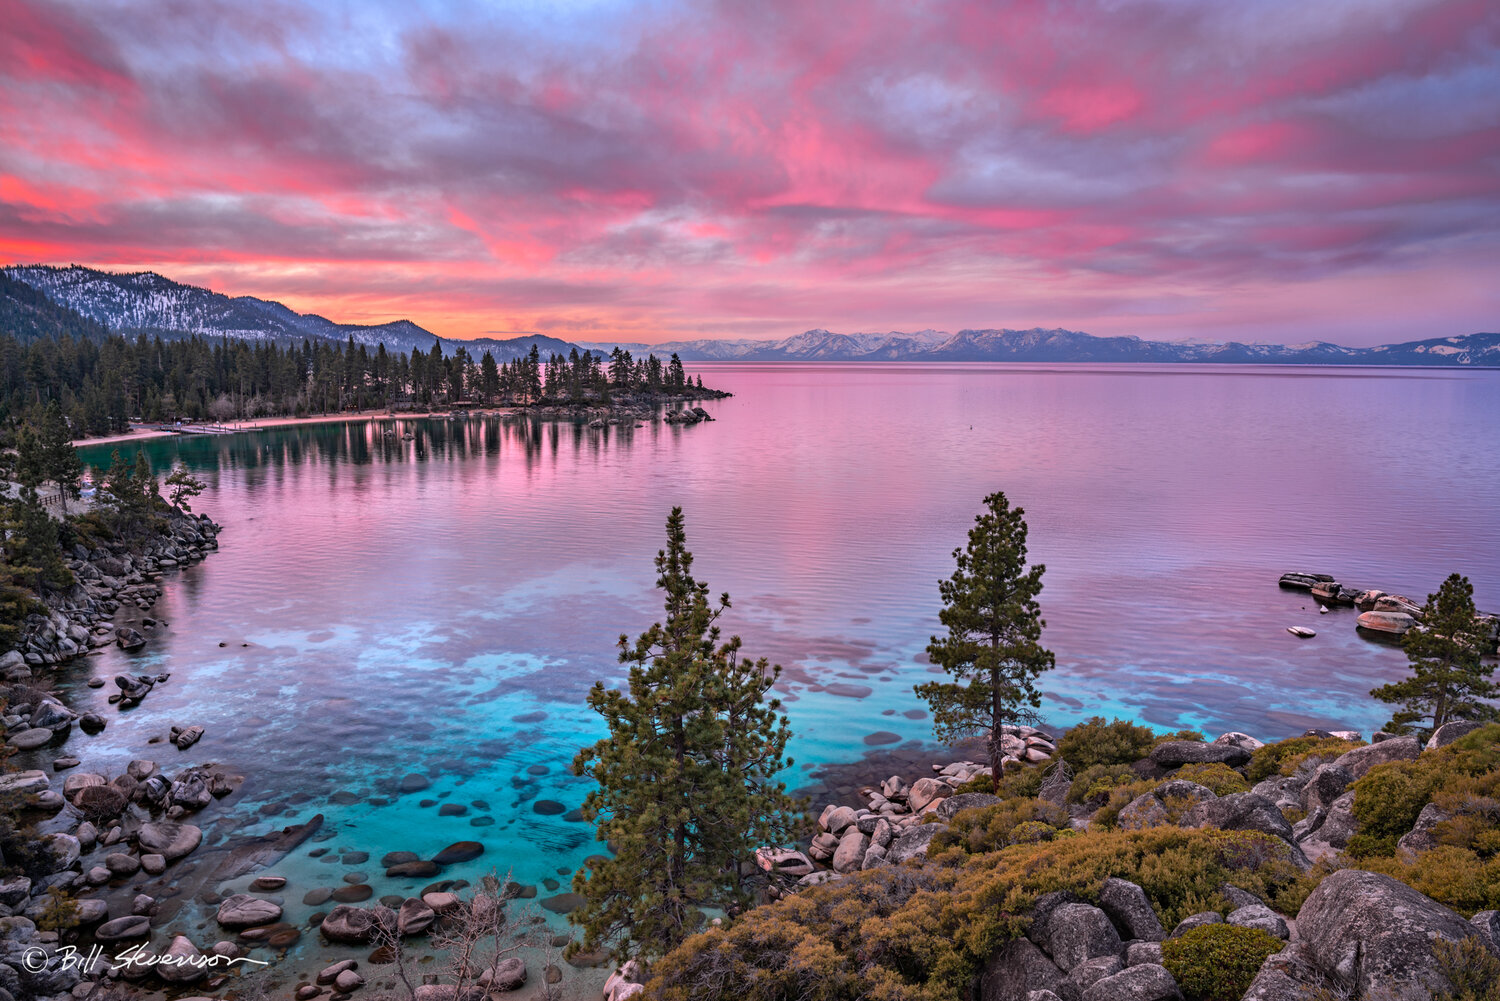 Chất lượng ảnh lớn, sắc nét, in trên kim loại để bạn có thể treo lên tường phòng khách của mình, tăng sự sang trọng và đẳng cấp cho nơi ở của bạn. Lake Tahoe sẽ là sự lựa chọn hoàn hảo để thể hiện sự đam mê và tình yêu với thiên nhiên của bạn.